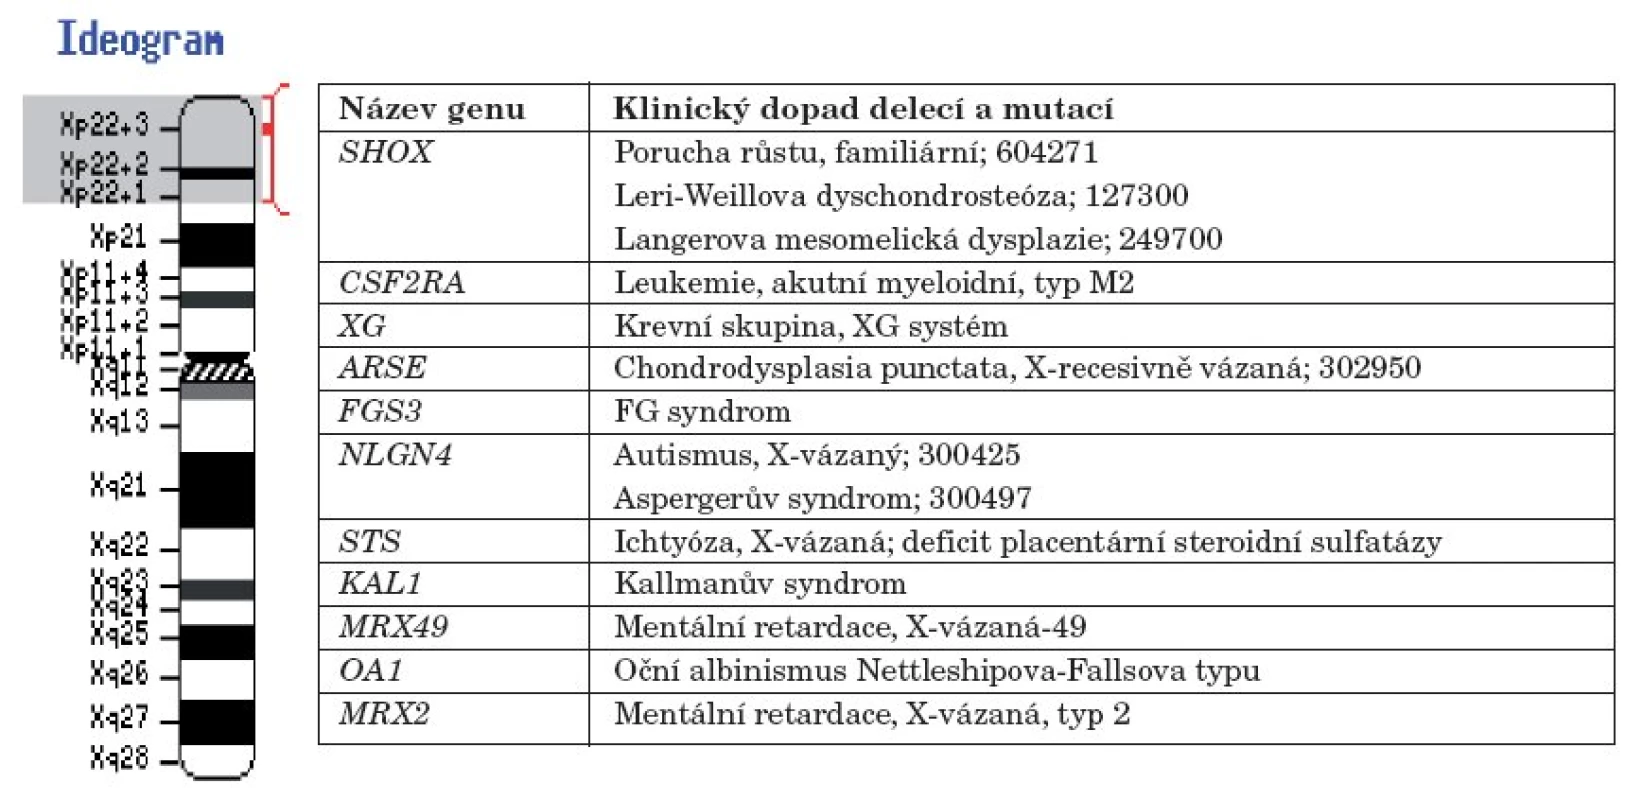 Chromozom X a klinický dopad mutací a delecí v genech na chromozomu X v oblasti Xp22.1 –
Xp22.3 (upraveno podle NCBI Genome Resource Guides).